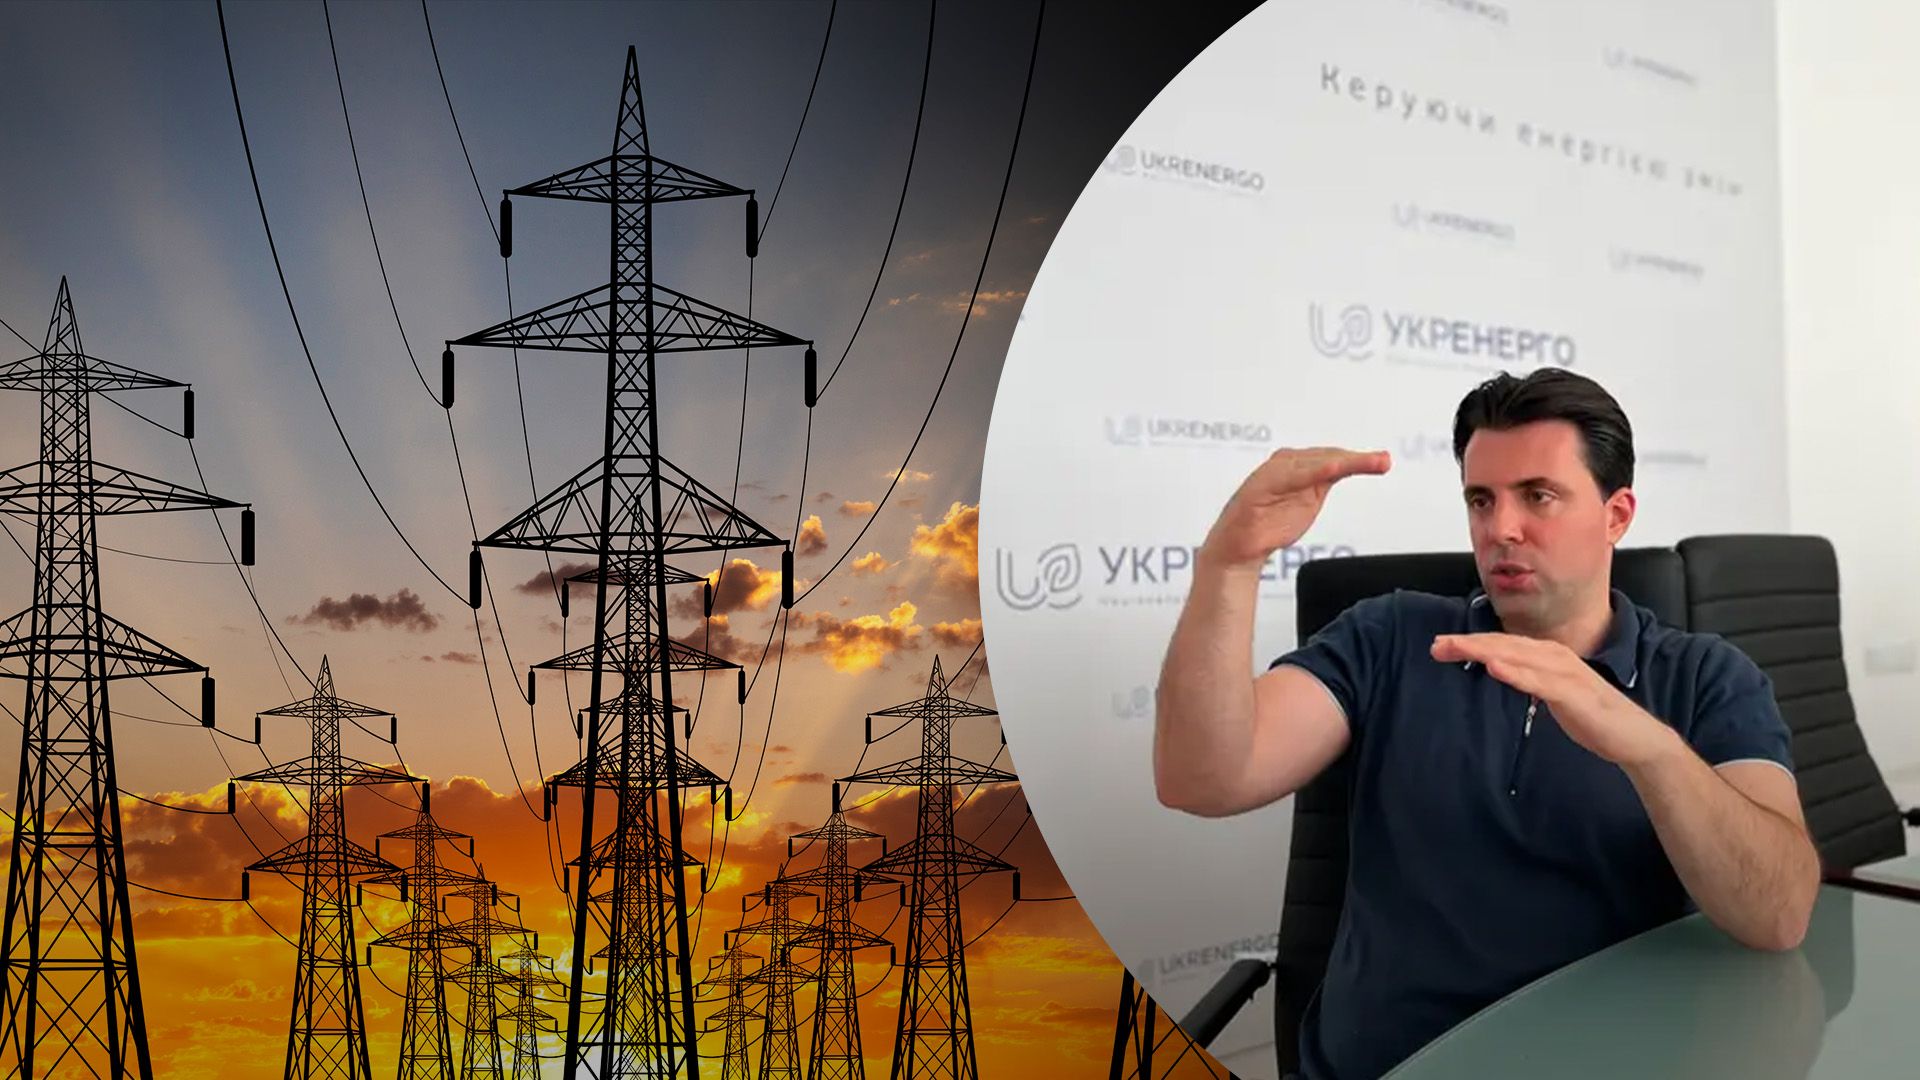 Який зараз дефіцит в енергосистемі України